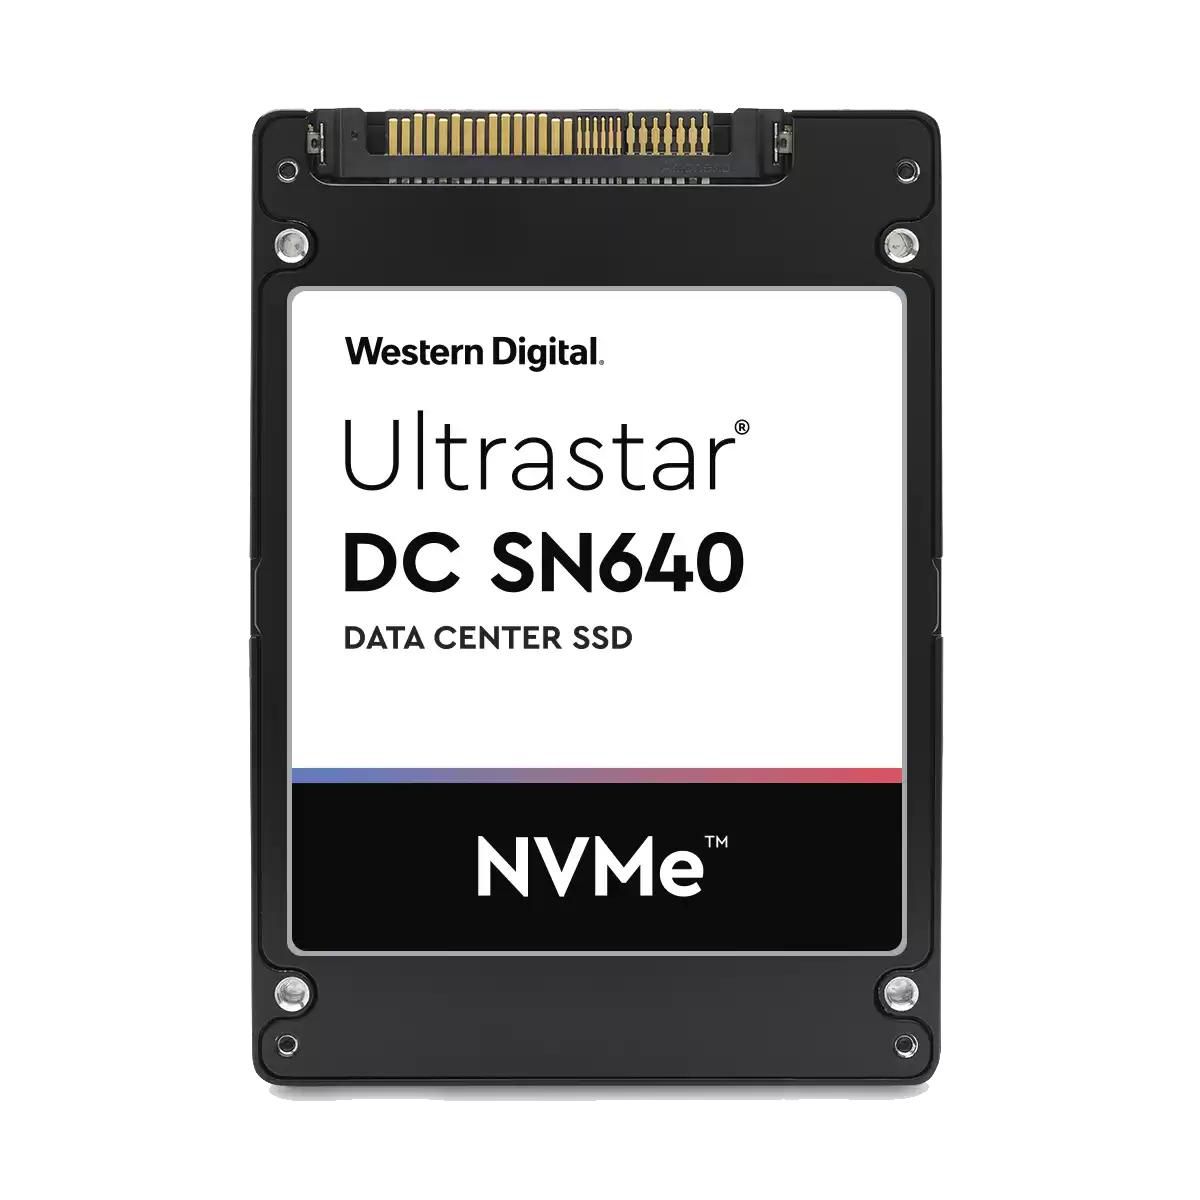 Western-Digital 0TS1854 W128290562 Ultrastar Dc Sn640 2.5 800 